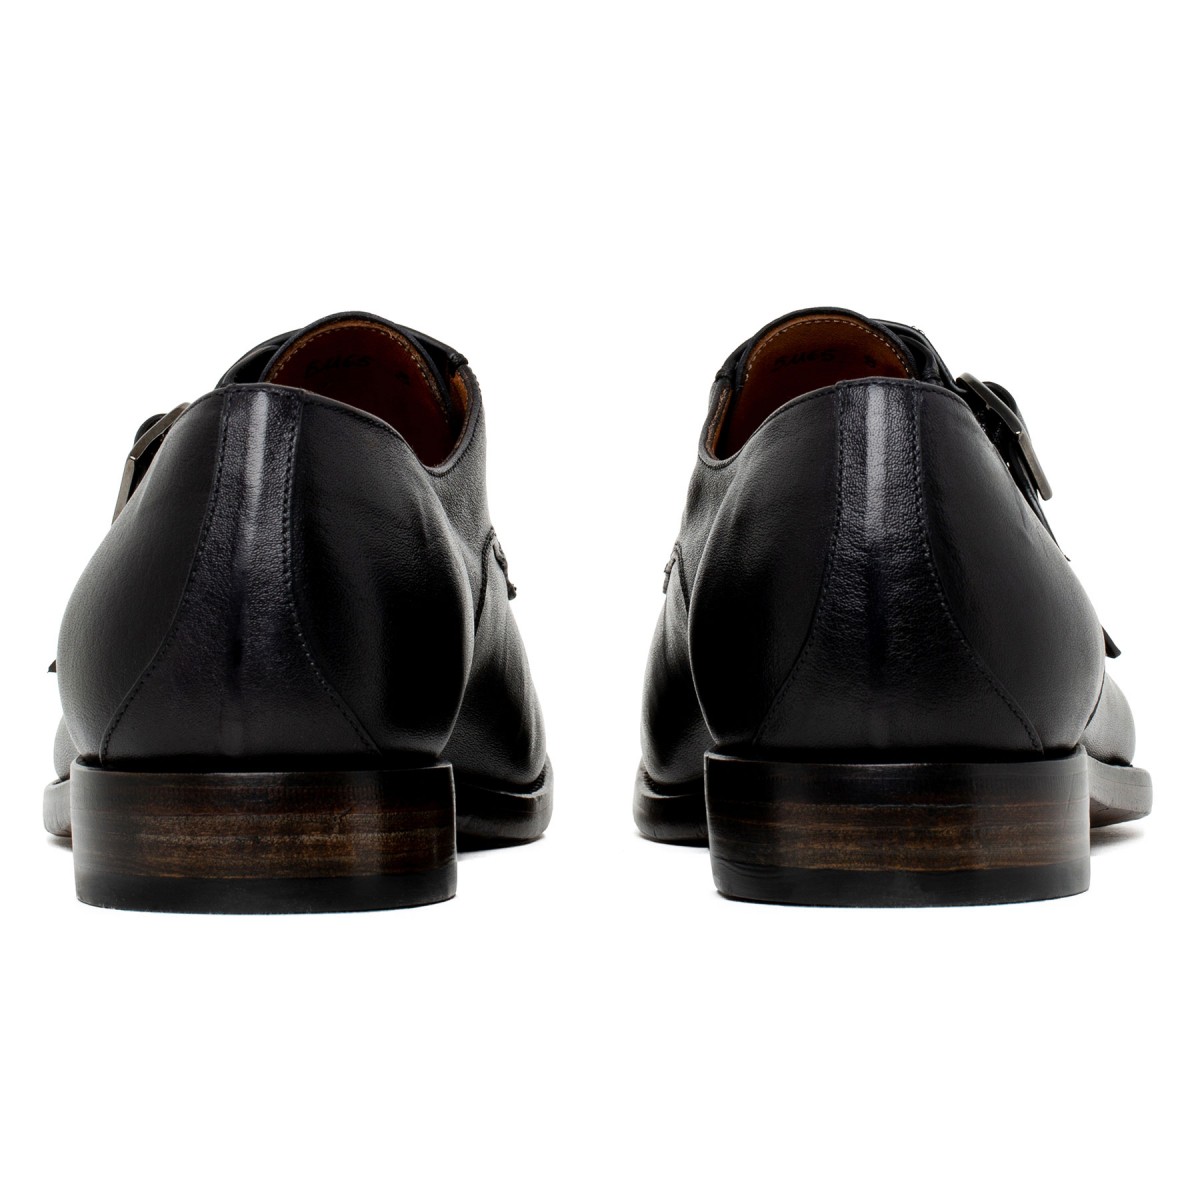 Double monk strap black shoes